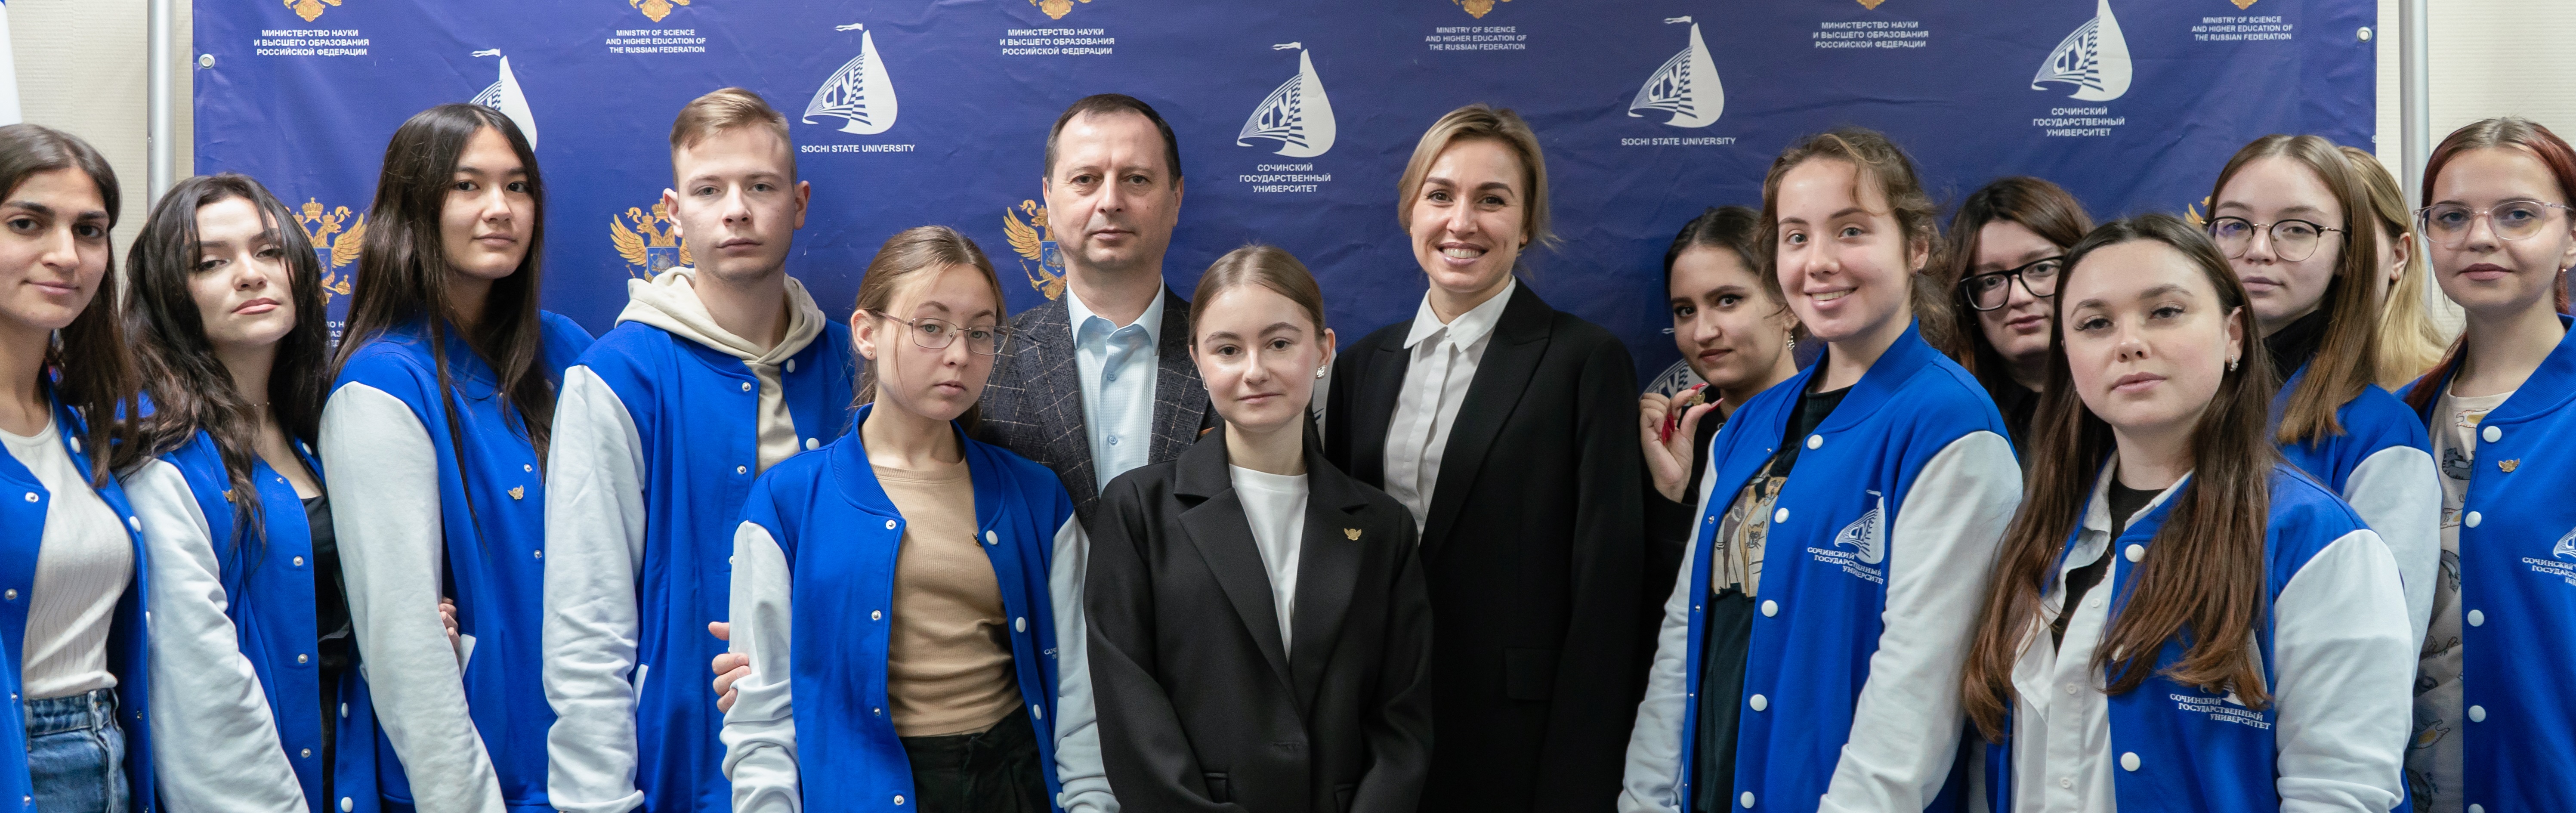 В Сочи открылась региональная площадка студенческого Медиацентра Минобрнауки России